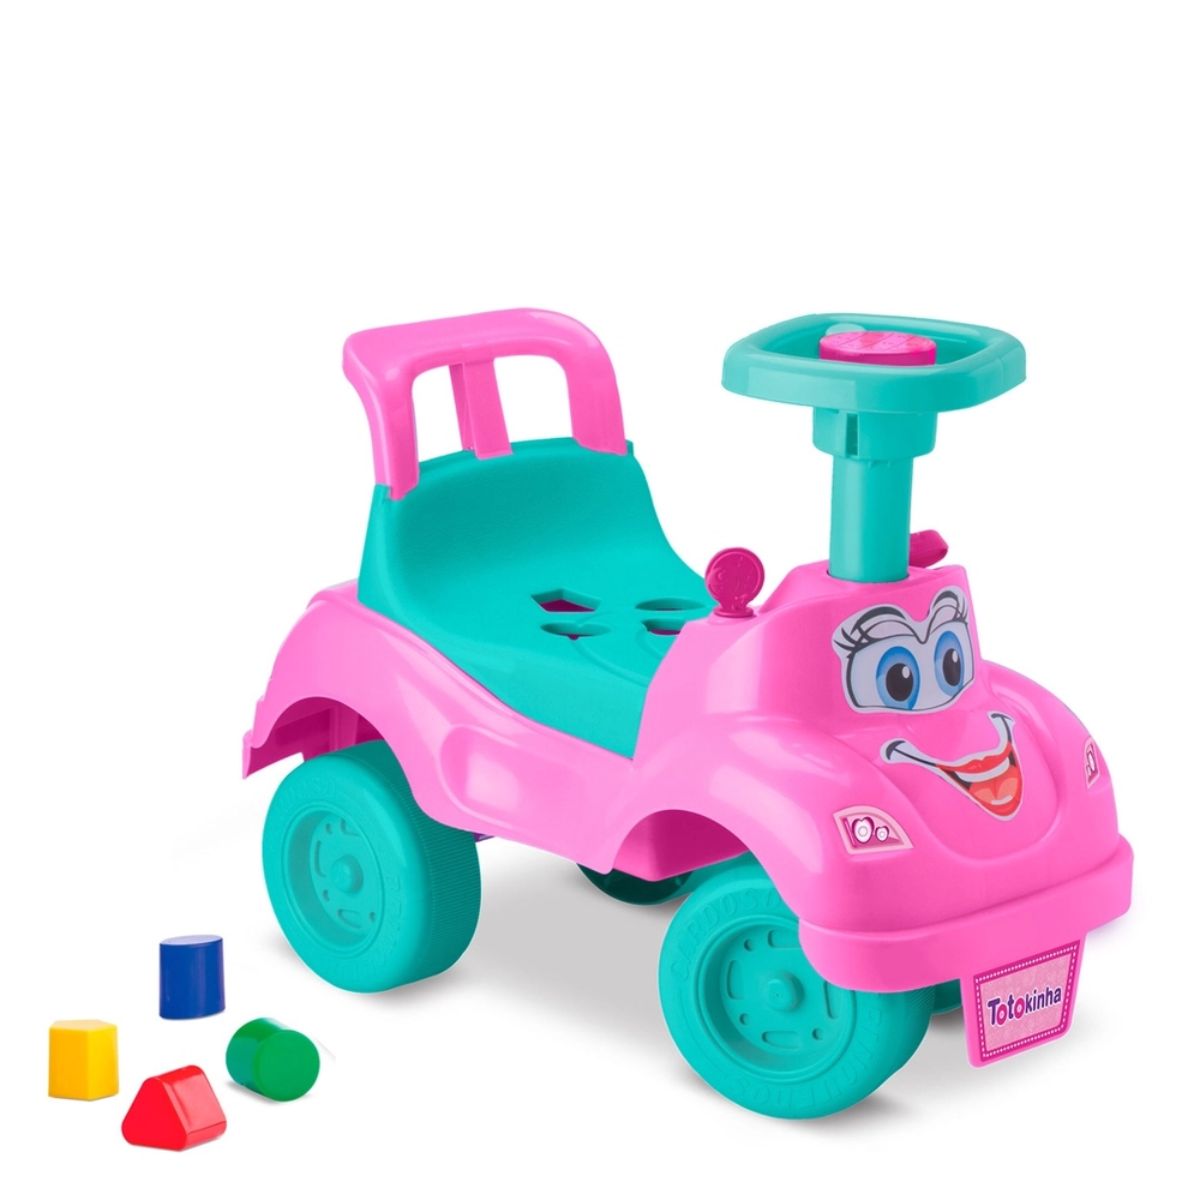 Saindo por R$ 29,98: Andador para Bebês Cardoso Toys Totokinha Menina Verde e Rosa | Pelando